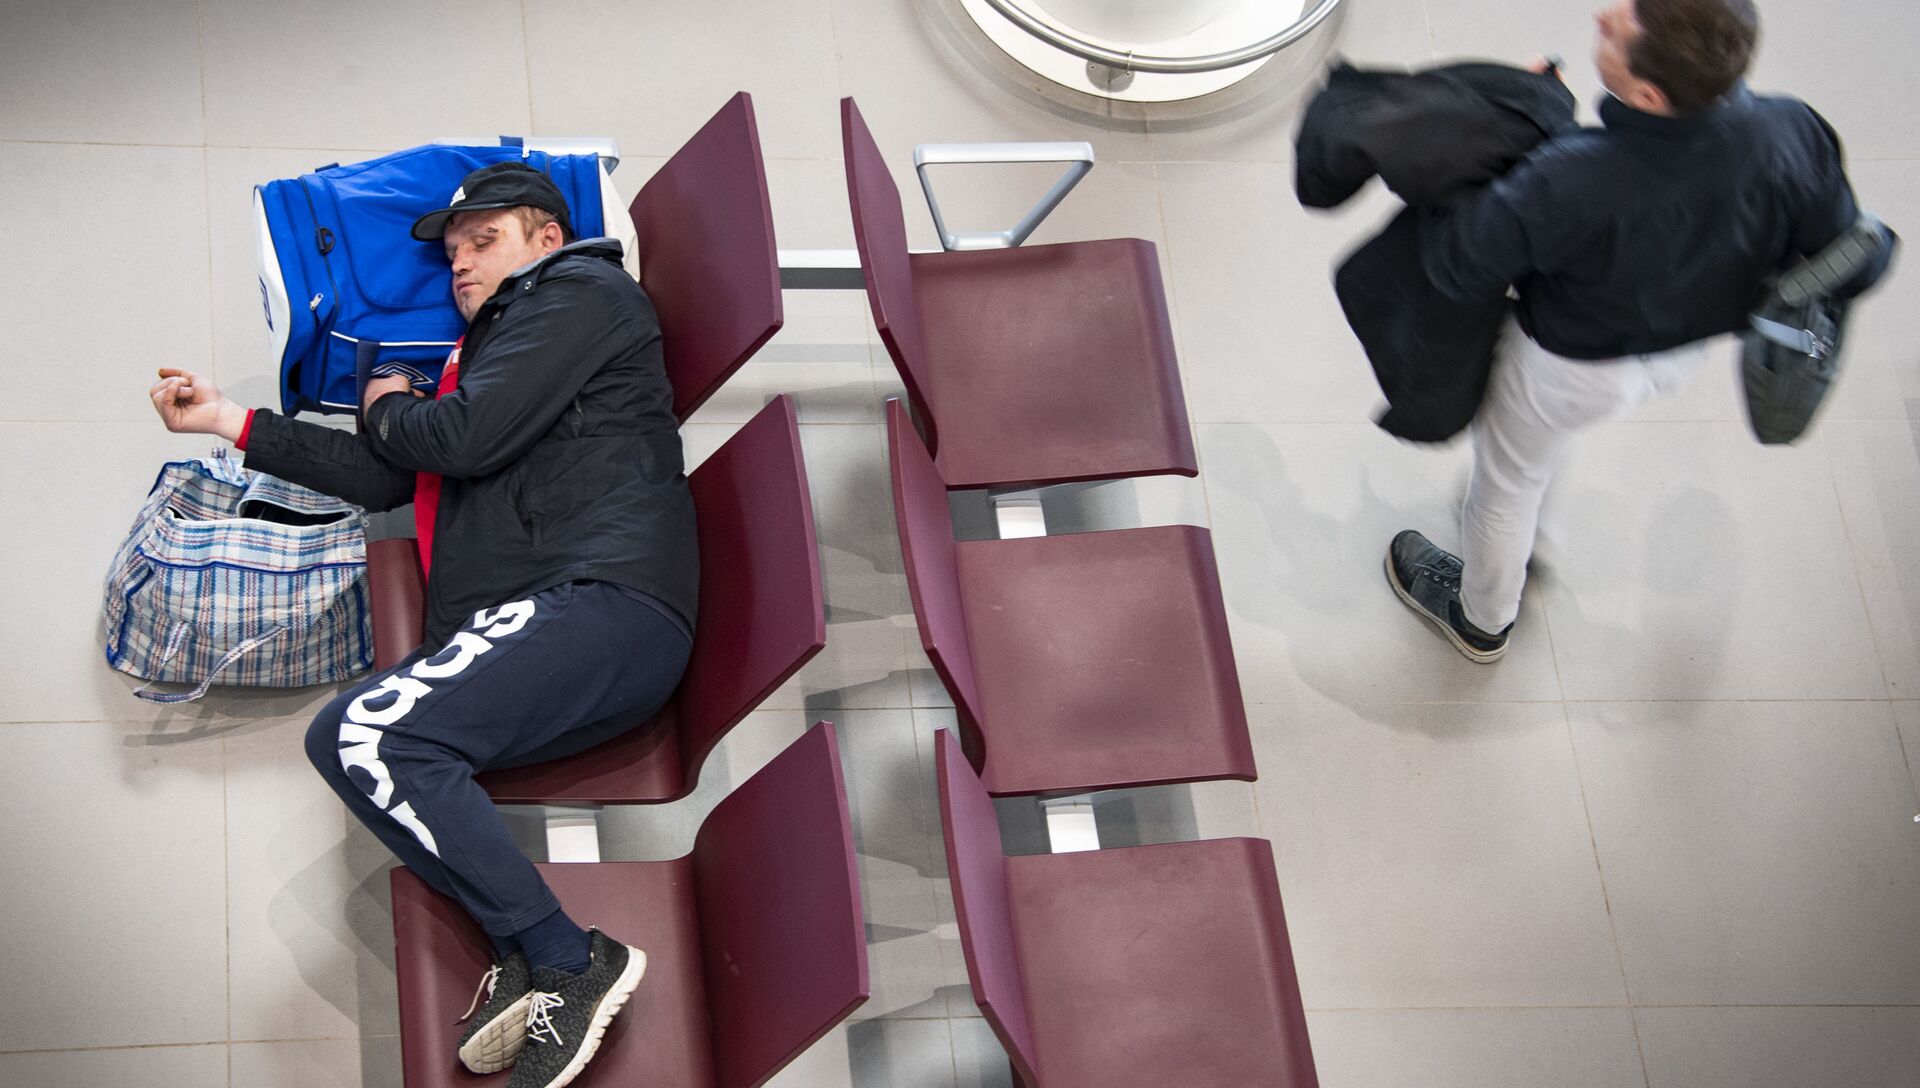 Симферопольский аэропорт, зал ожидания, пассажир спит - РИА Новости, 1920, 17.05.2021